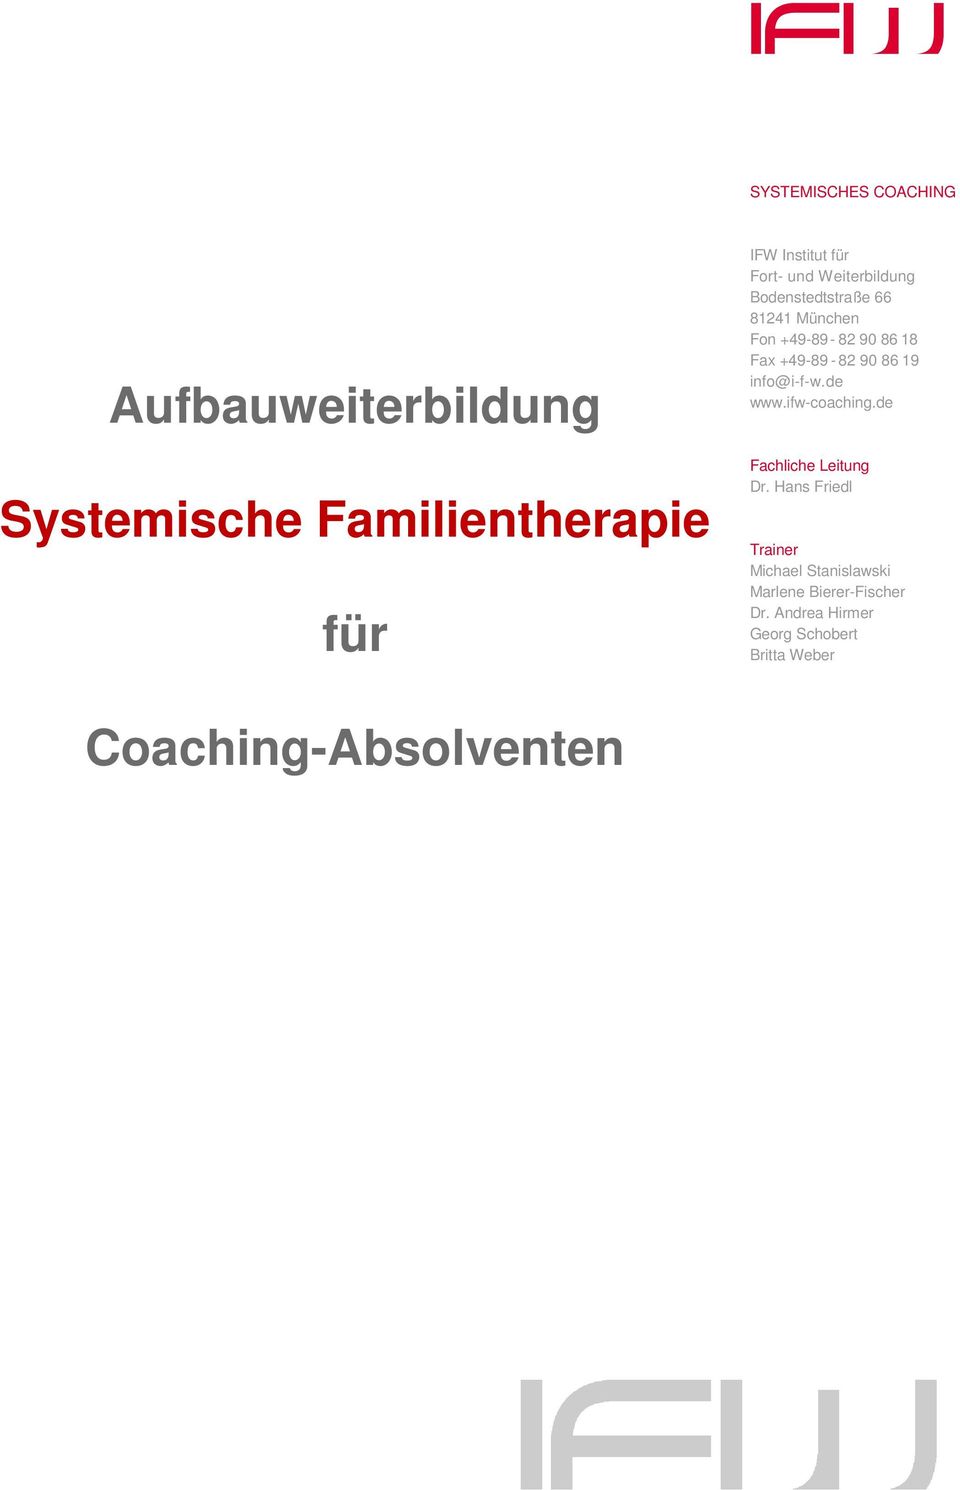 82 90 86 19 info@i-f-w.de www.ifw-coaching.de Fachliche Leitung Dr.